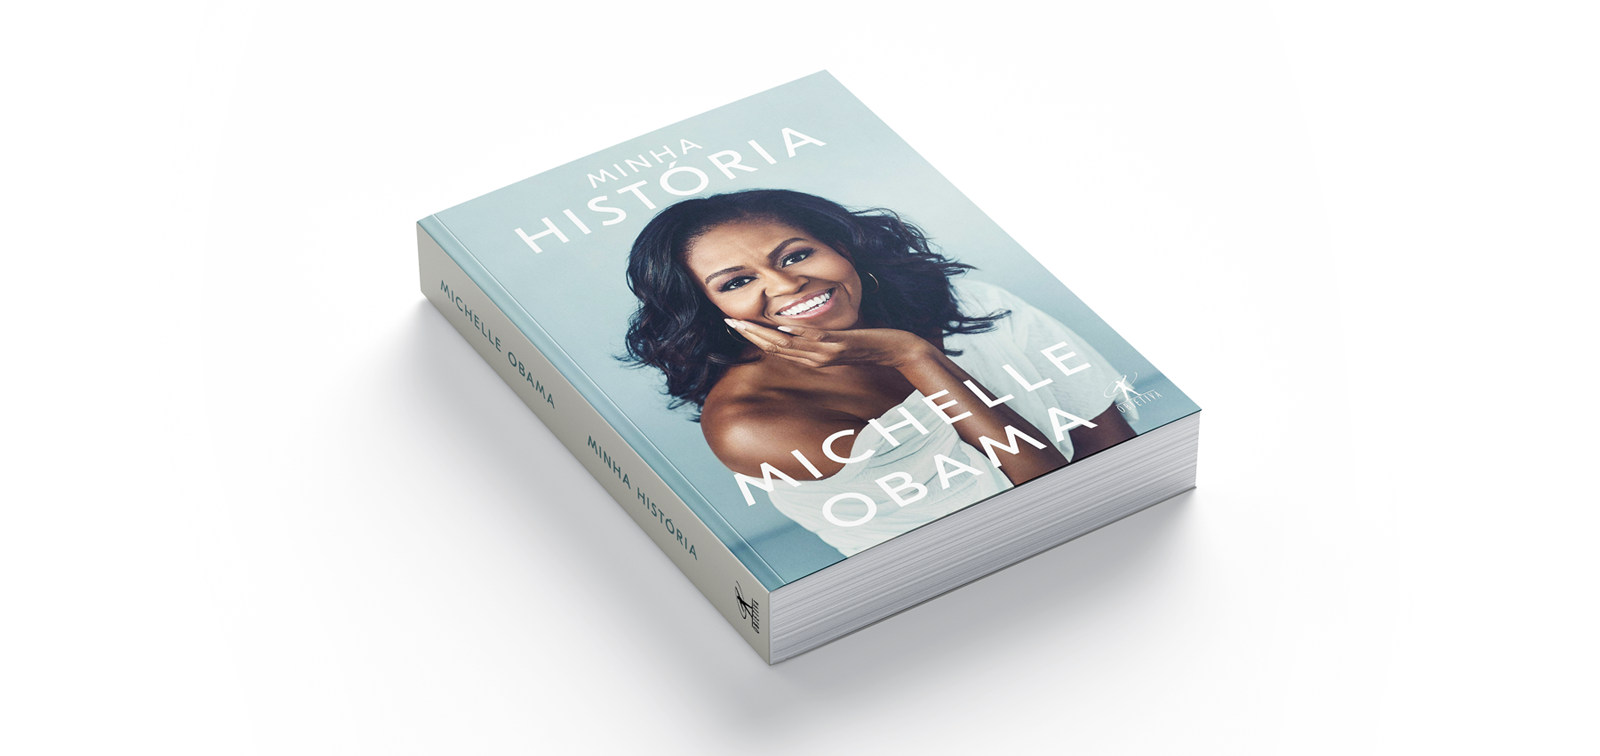 Minha História - Michelle Obama